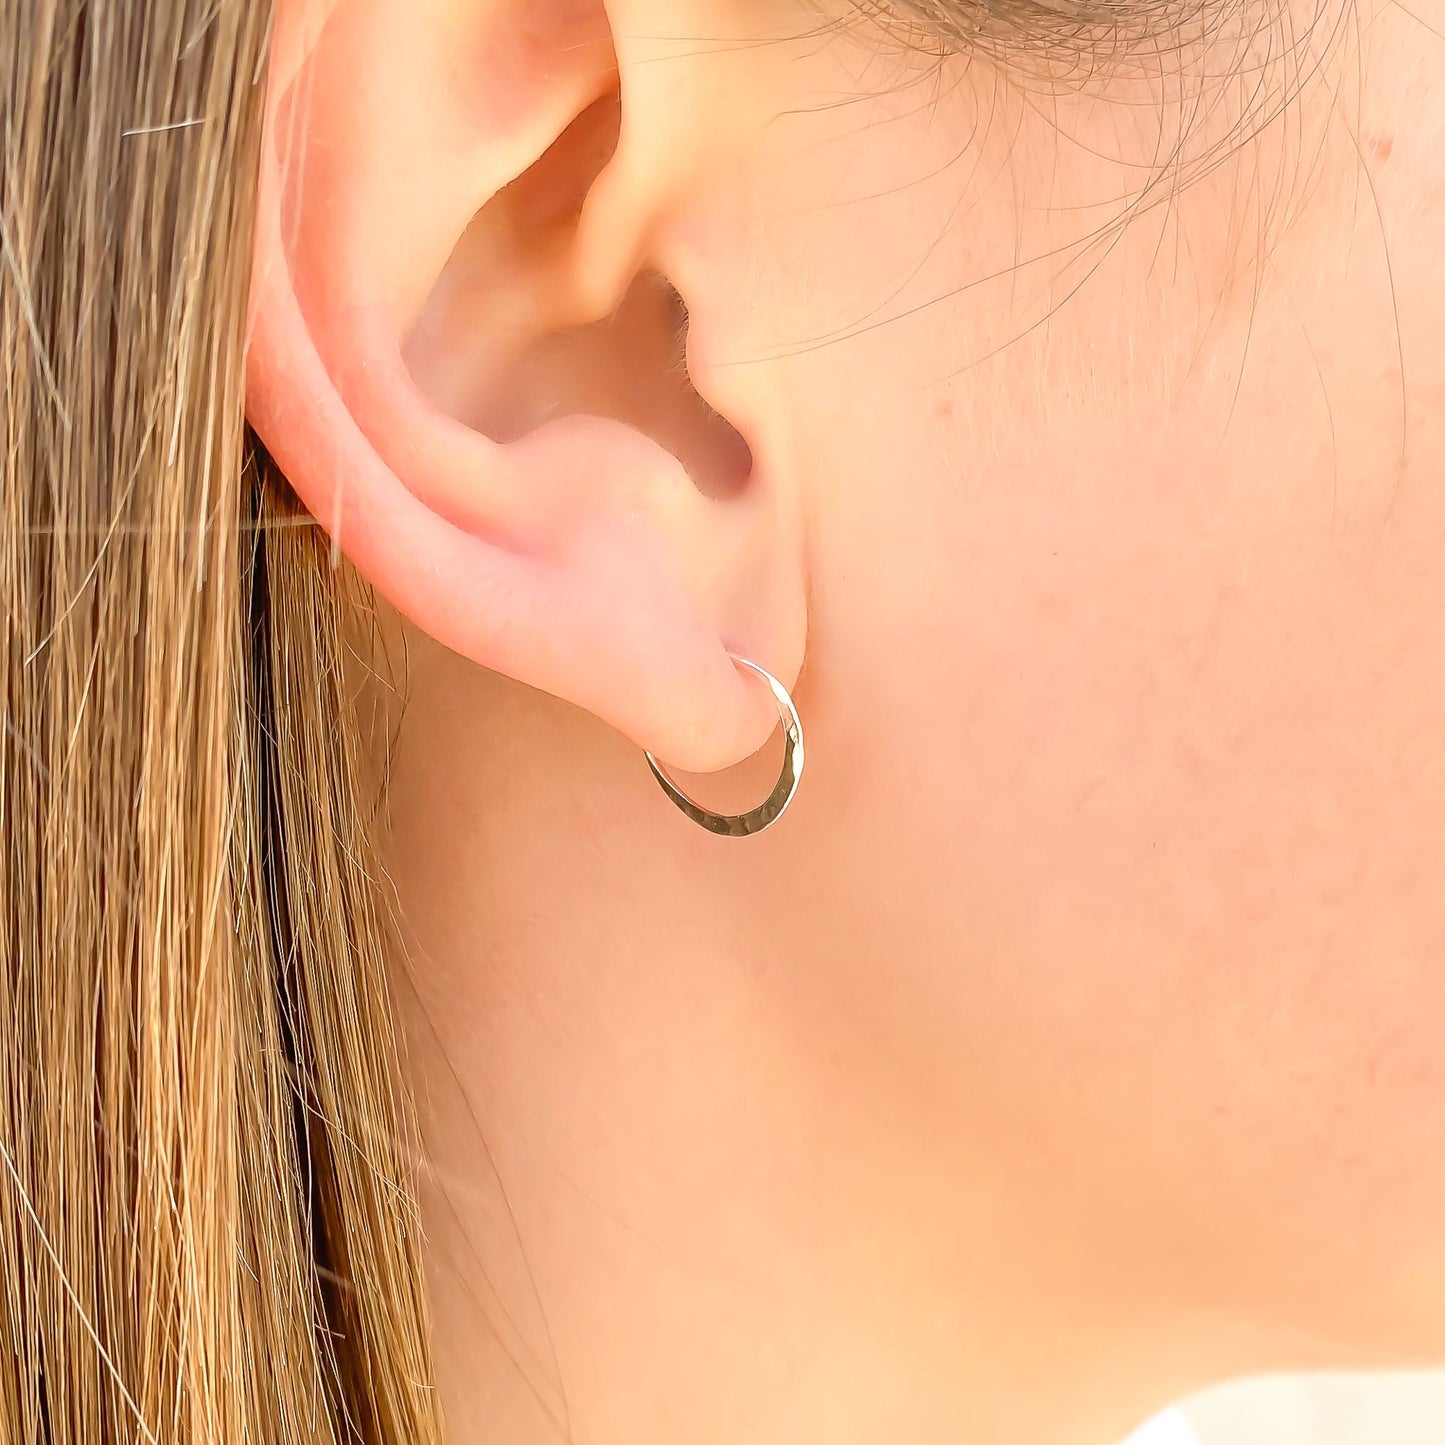 Smal Hammered Hoop Earrings, Sterling Silver 12mm